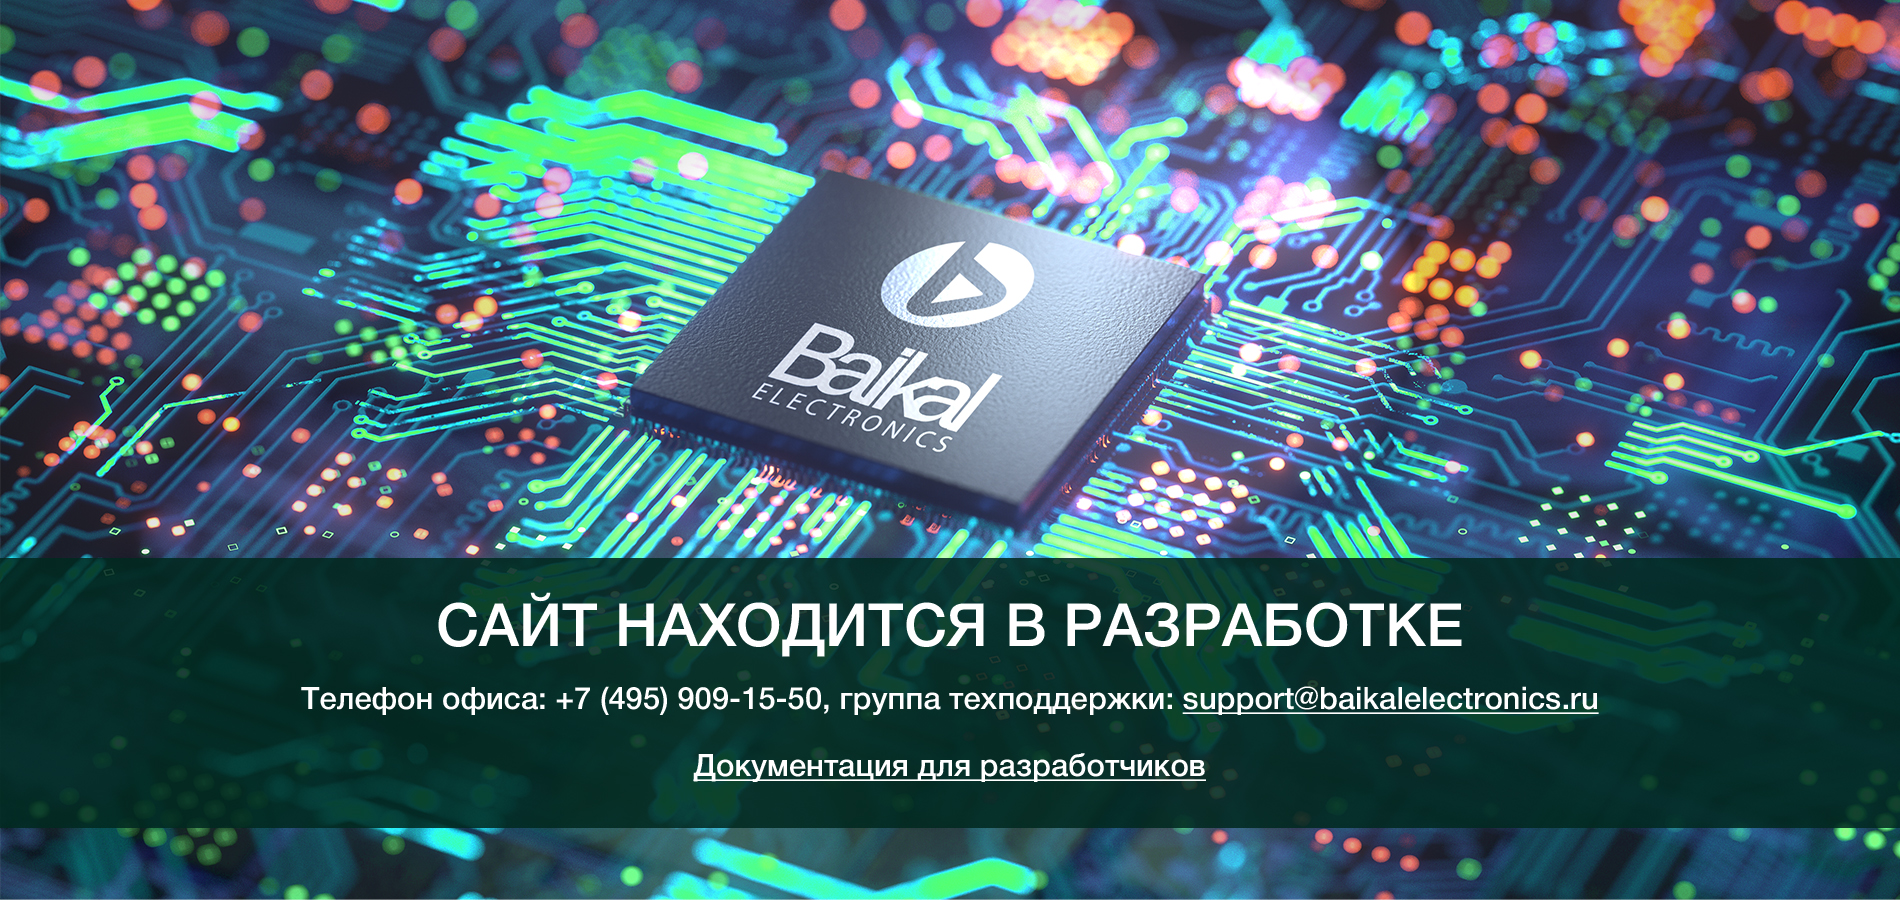 Процессоры Байкал от российского разработчика процессоров Байкал Электроникс